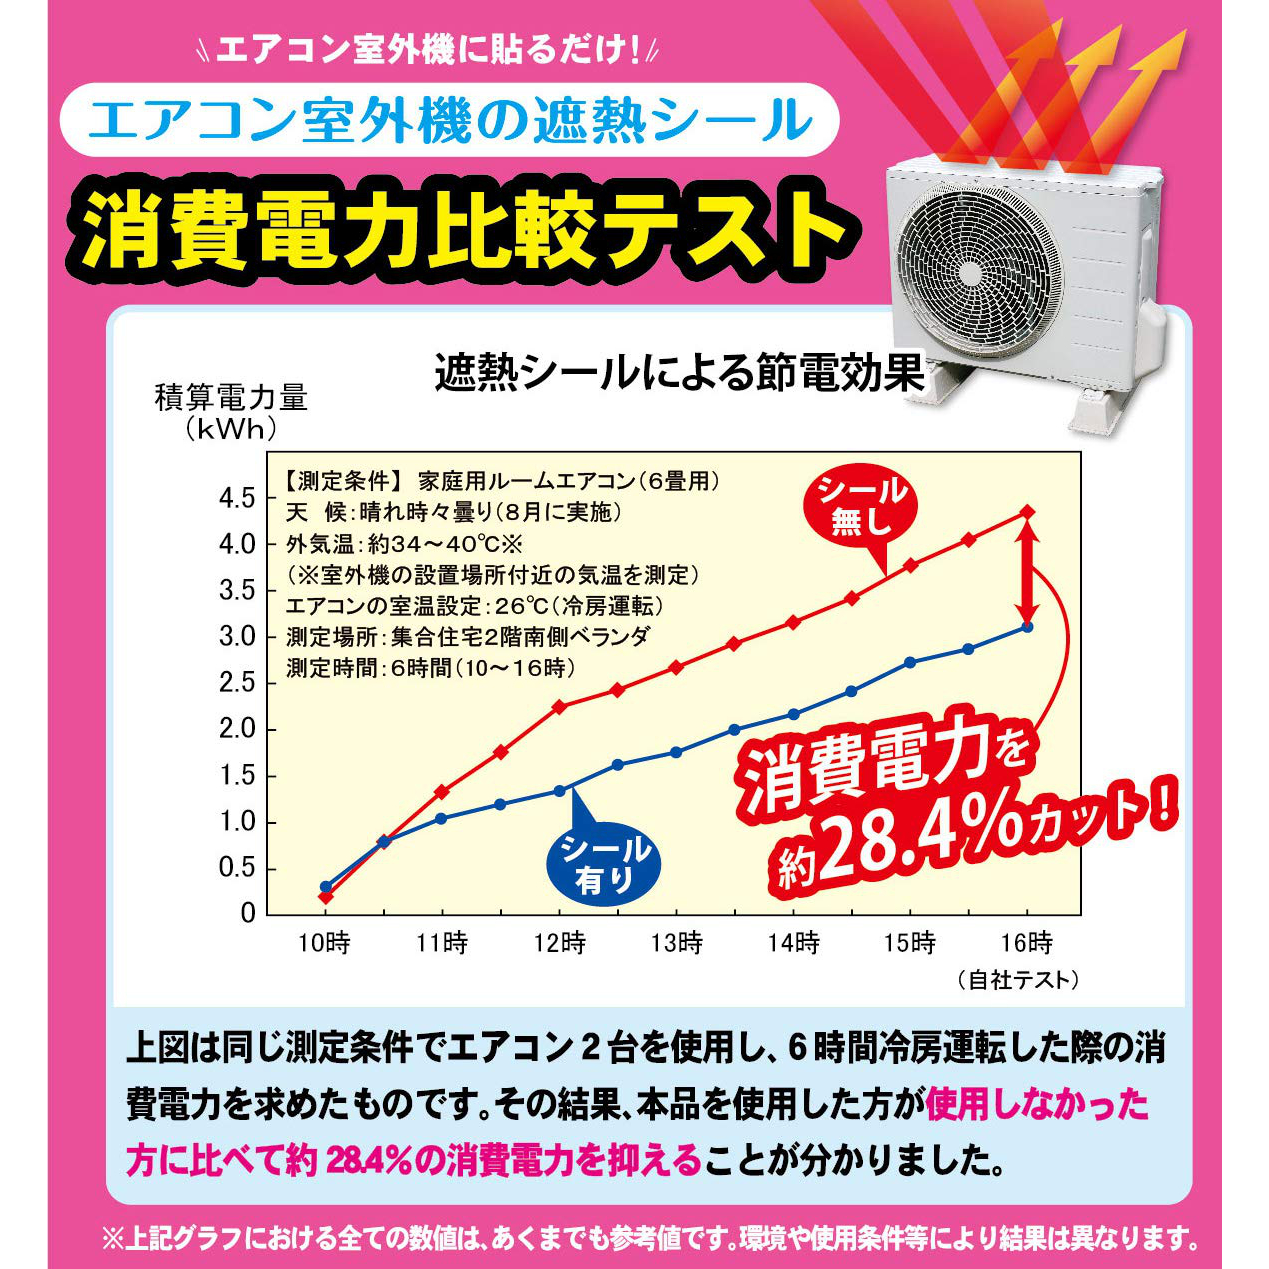 【お買得2セット】 エアコン室外機の熱線反射シール 遮熱シール 約20x33cm 4枚入り EC-011 日本製 ワイズ